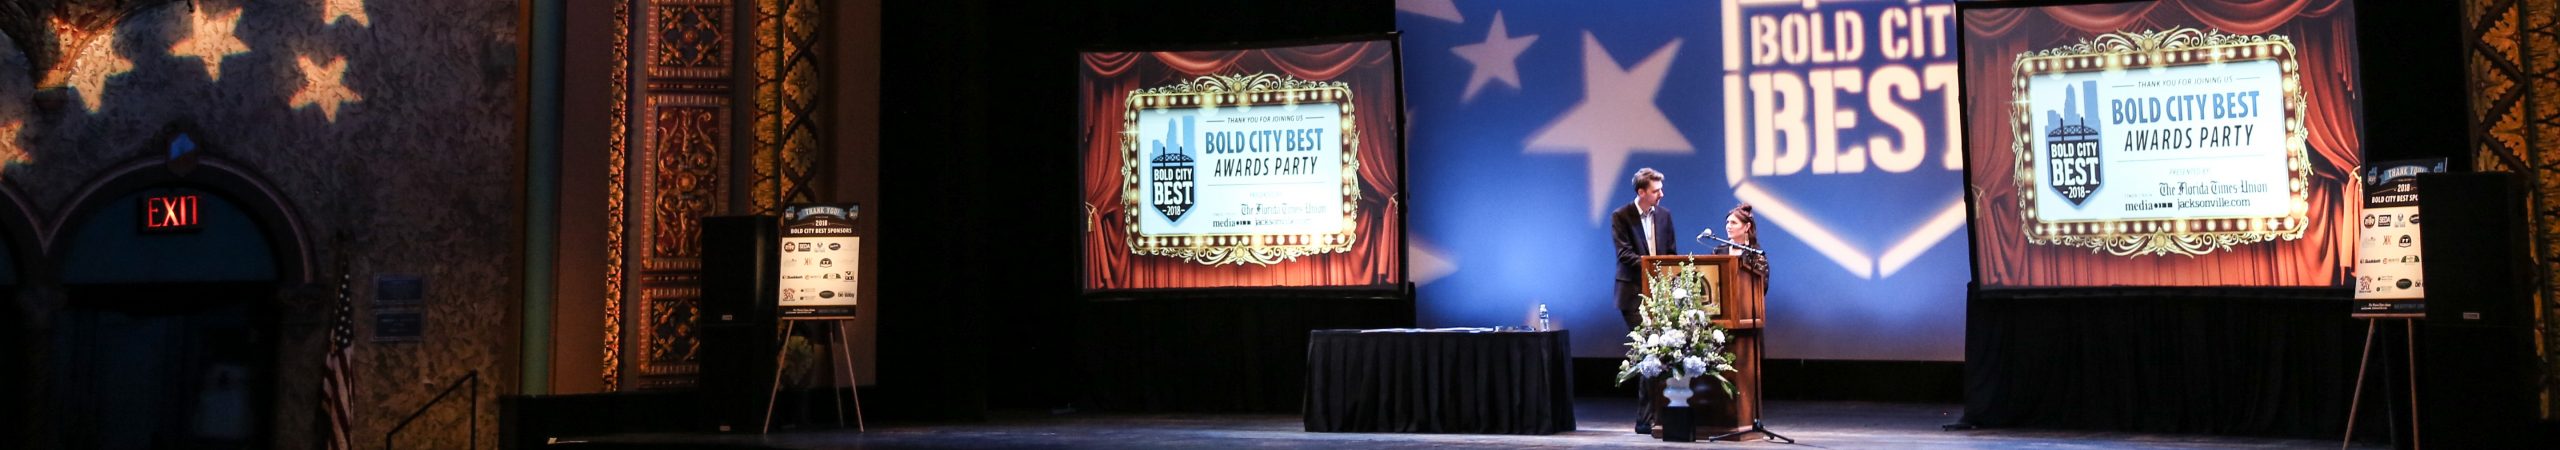 Bold City Best Awards